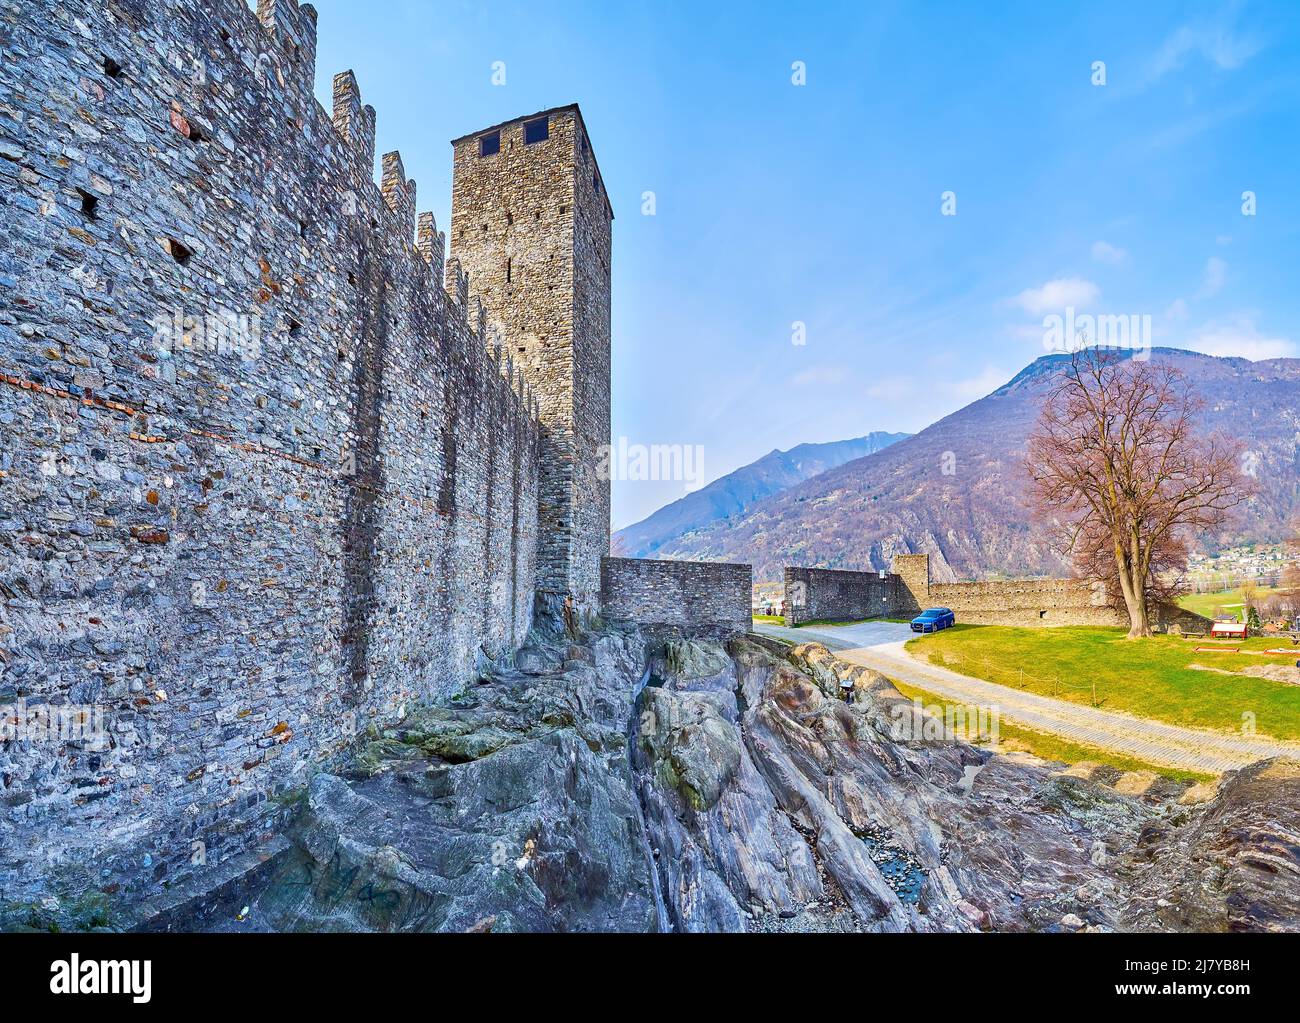 Les remparts de la ville avec la tour Torre Nera de la forteresse de Castelgrande, Bellinzona, Suisse Banque D'Images